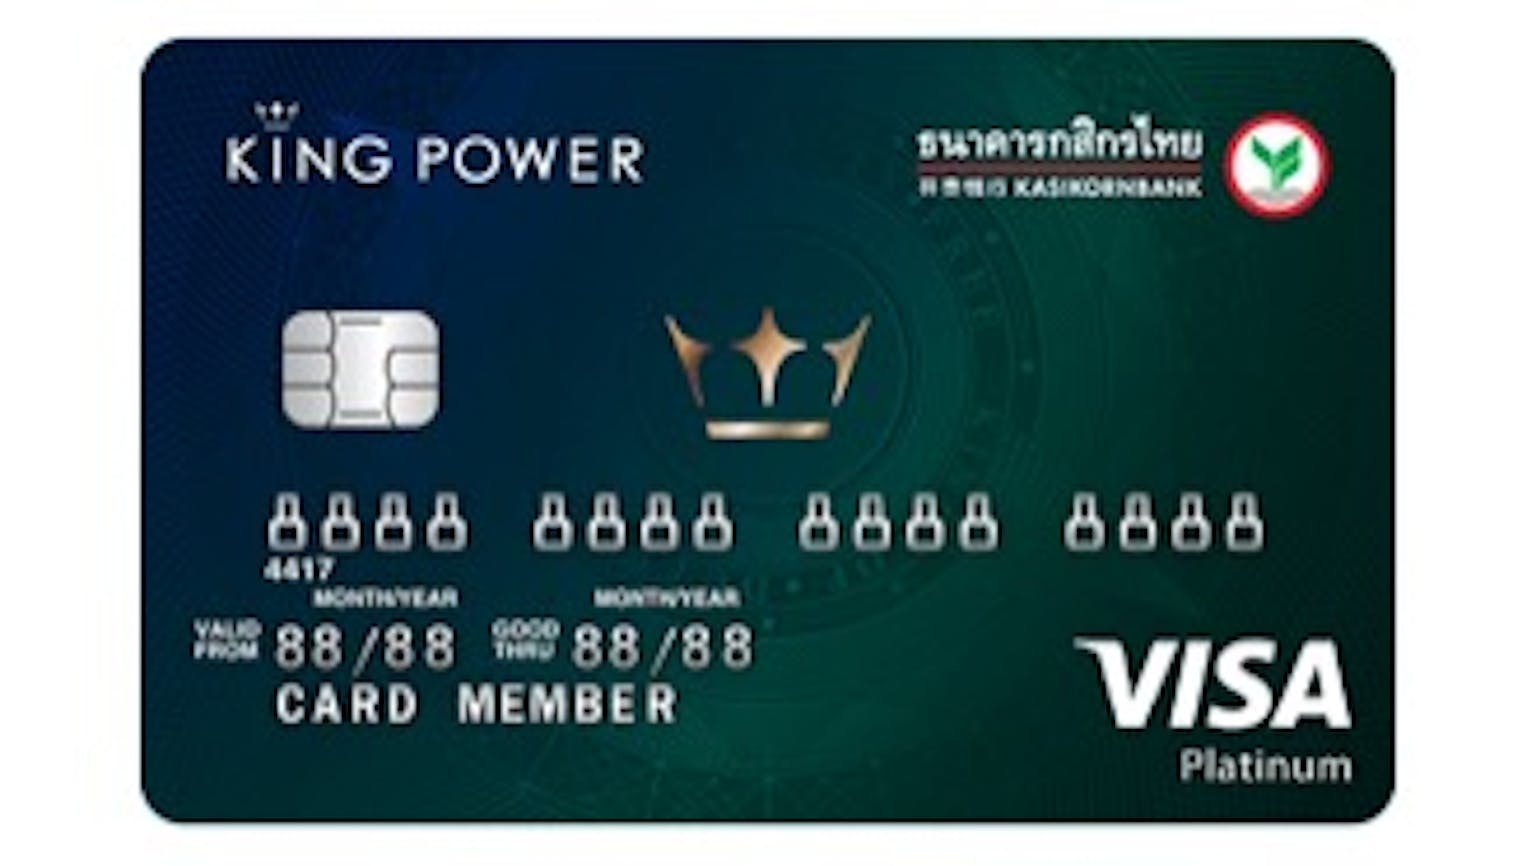 บัตรเครดิตร่วม คิงเพาเวอร์ - กสิกรไทย (แพลทินั่ม)